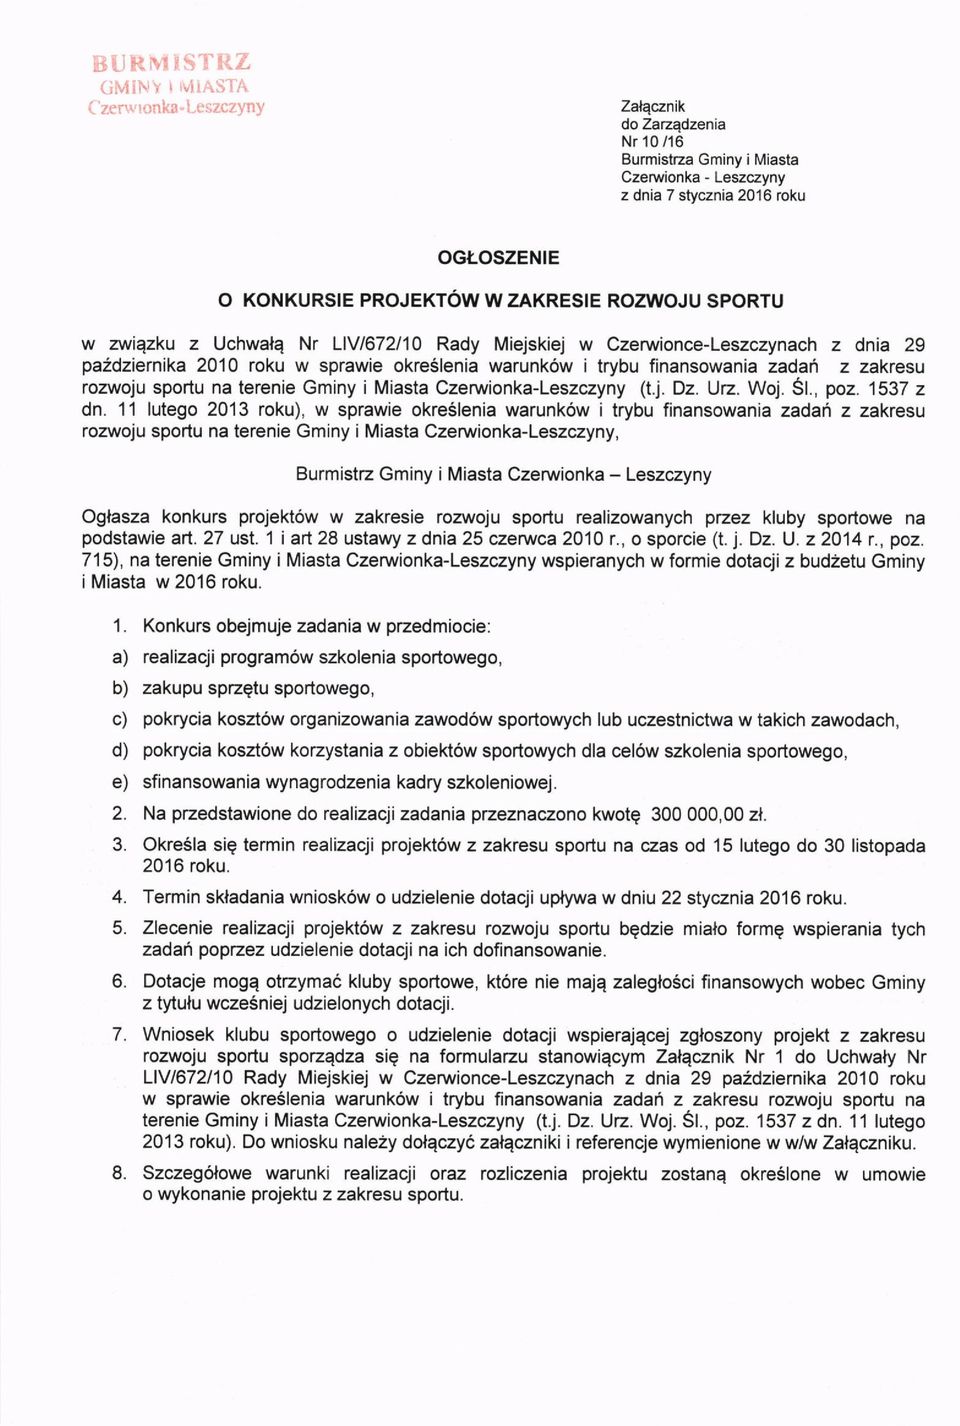 LIV/672I10 Rady Miejskiej w Czenarionce-Leszczynach z dnia 29 pa2dziernika 2010 roku w sprawie okreslenia warunk6w i trybu finansowania zadah z zakresu rozwoju sportu na terenie Gminy i Miasta